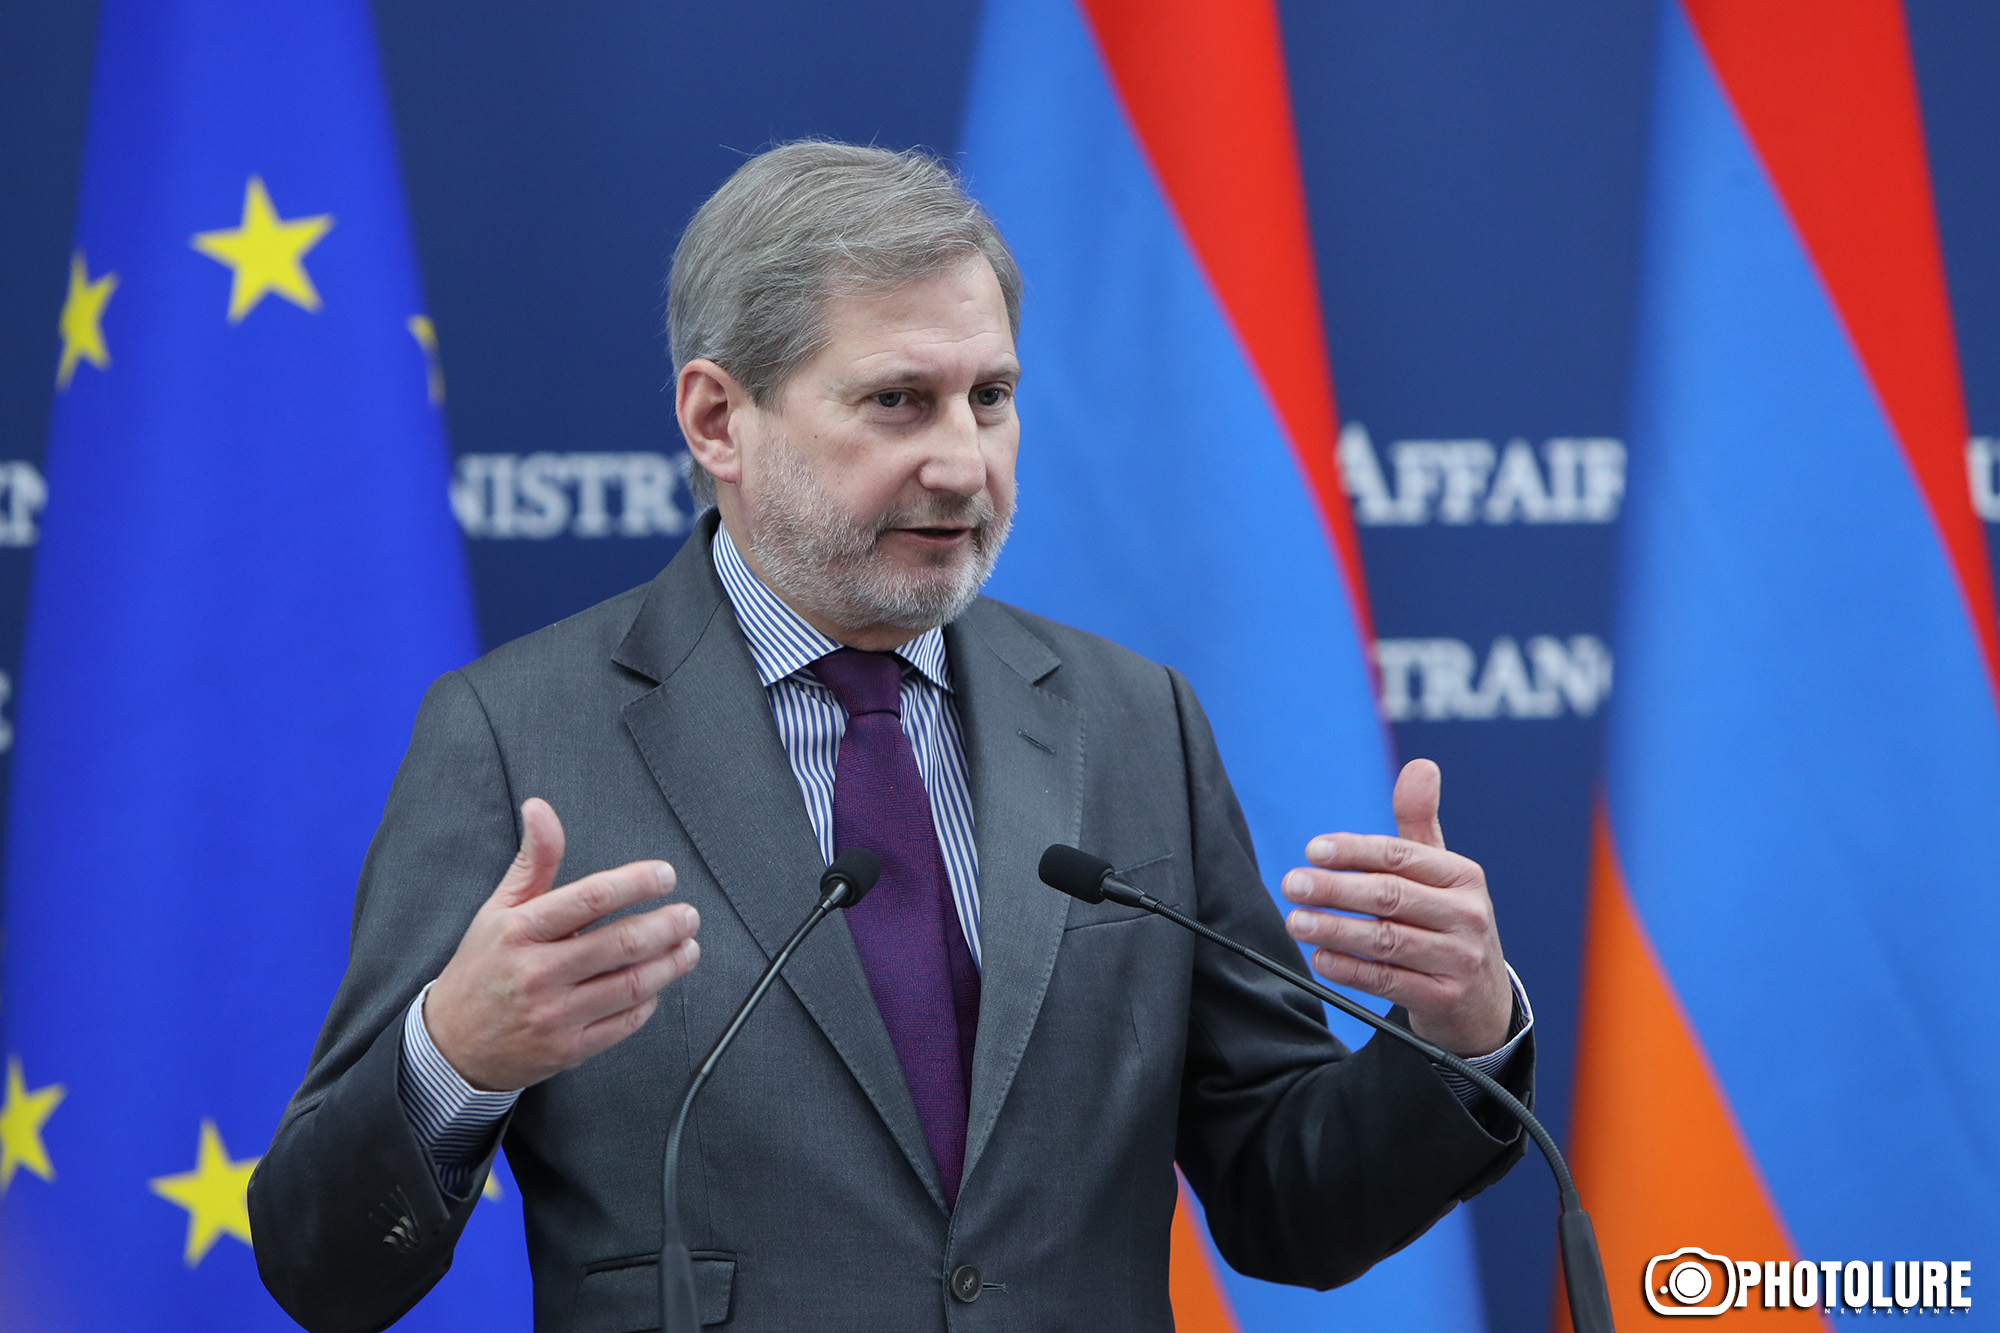 ЕС намерен увеличить предоставляемую Армении финансовую помощь - Йоханнес Хан